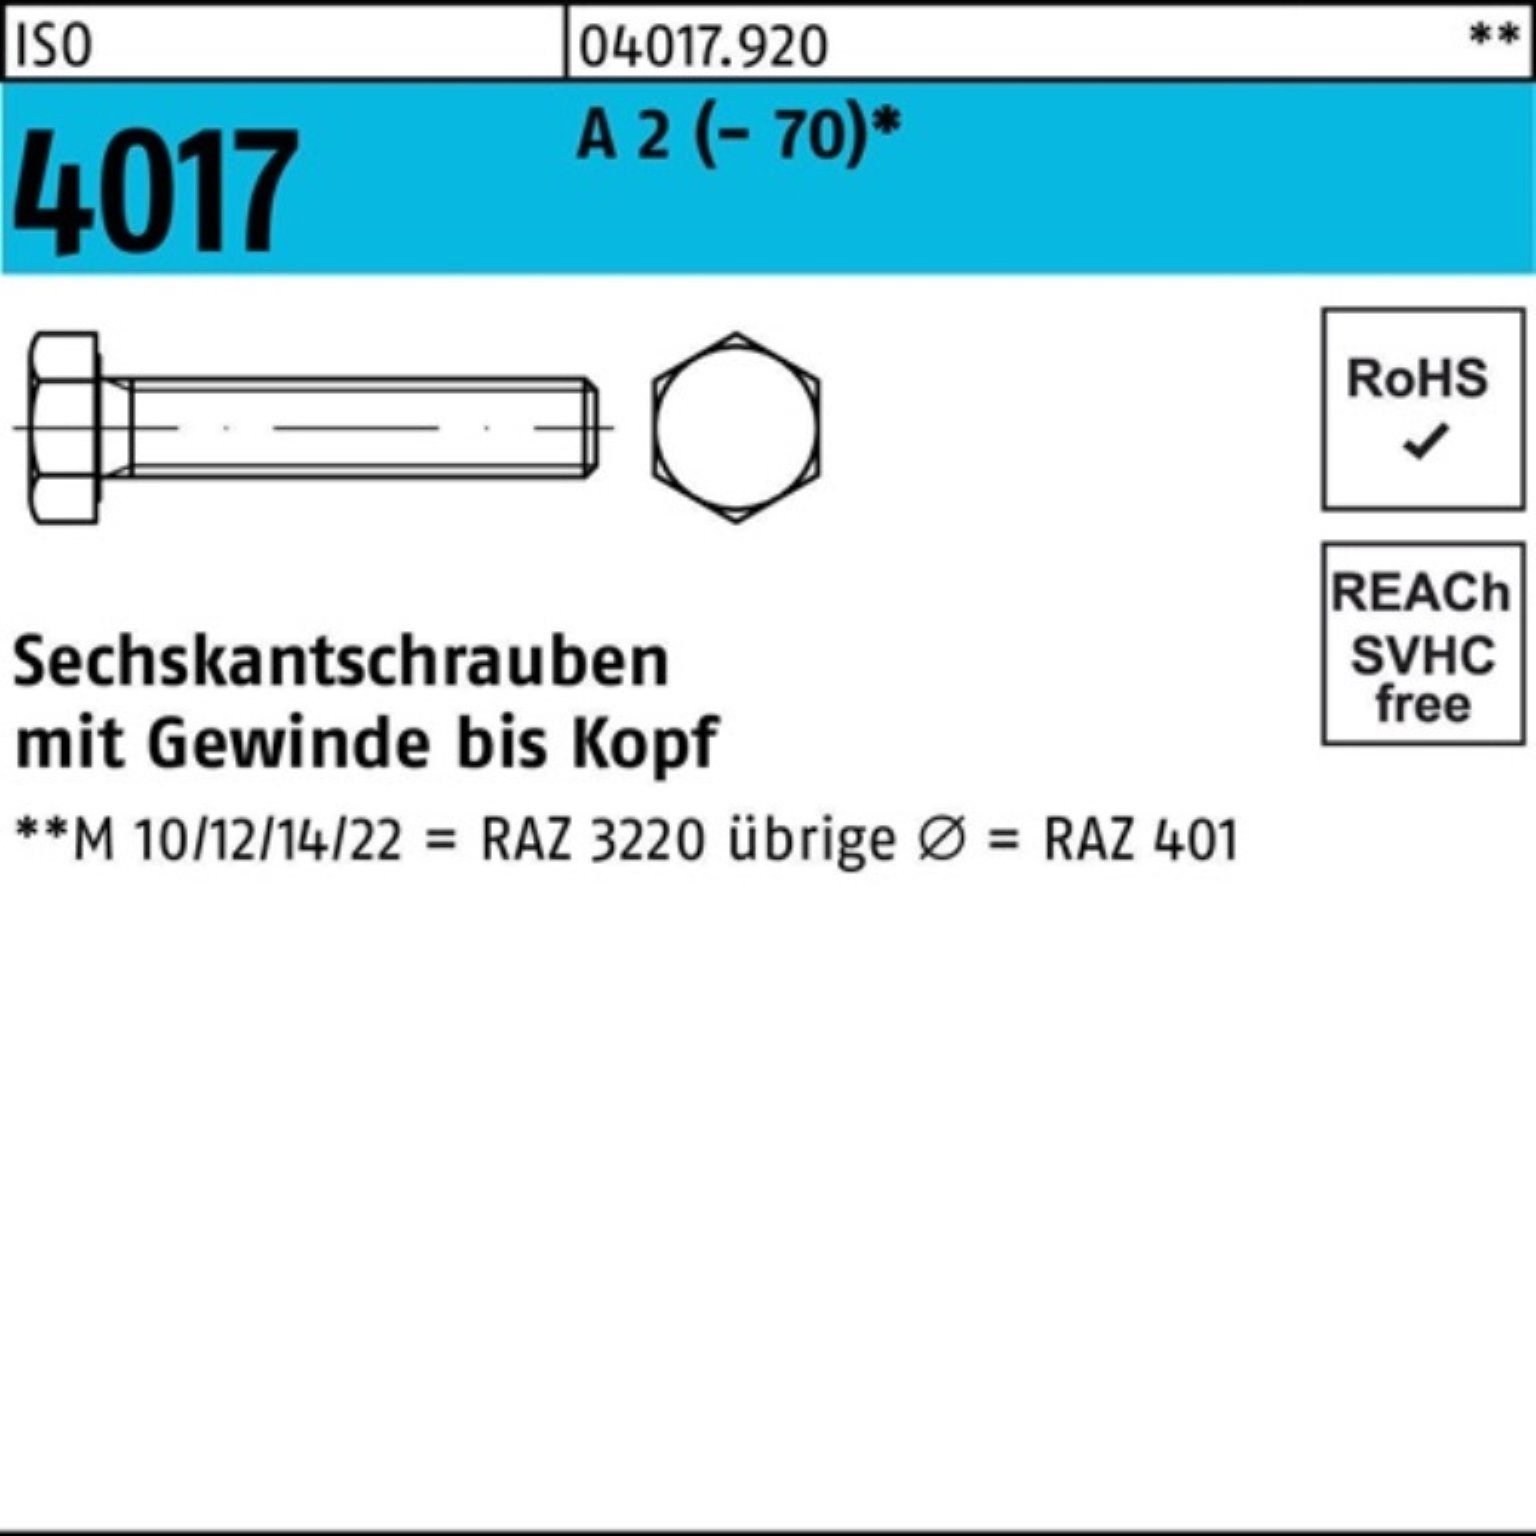 Bufab Sechskantschraube 100er Pack Sechskantschraube ISO 4017 VG M6x 90 A 2 (70) 100 Stück